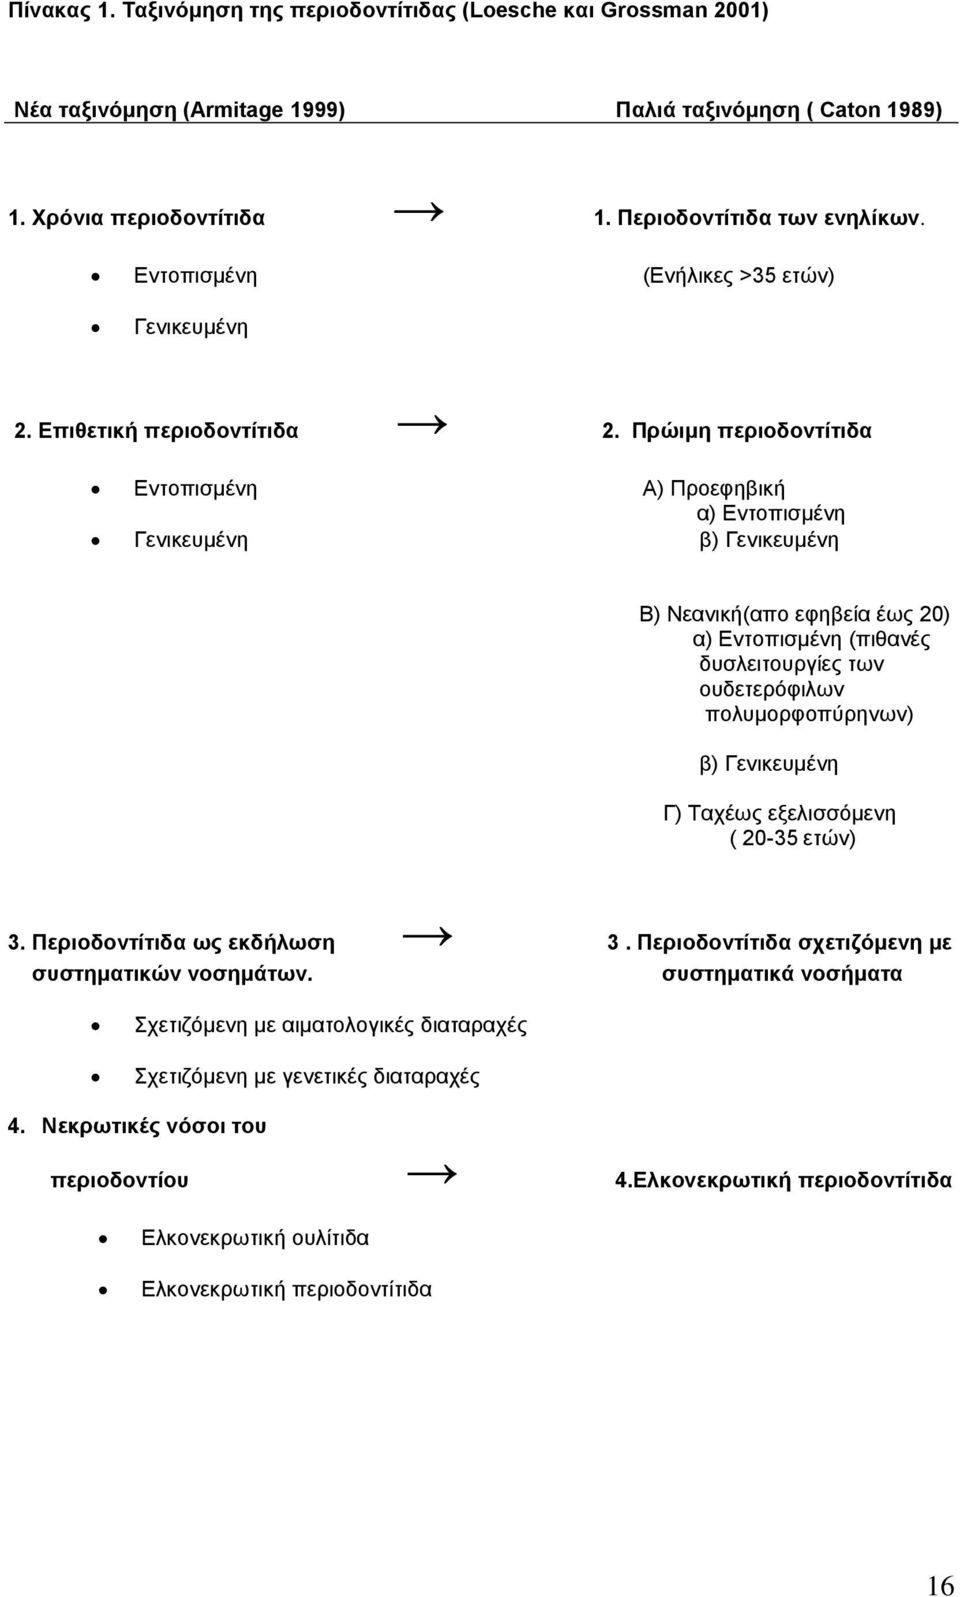 Πρώιµη περιοδοντίτιδα Εντοπισµένη Α) Προεφηβική α) Εντοπισµένη Γενικευµένη β) Γενικευµένη Β) Νεανική(απο εφηβεία έως 20) α) Εντοπισµένη (πιθανές δυσλειτουργίες των ουδετερόφιλων πολυµορφοπύρηνων) β)